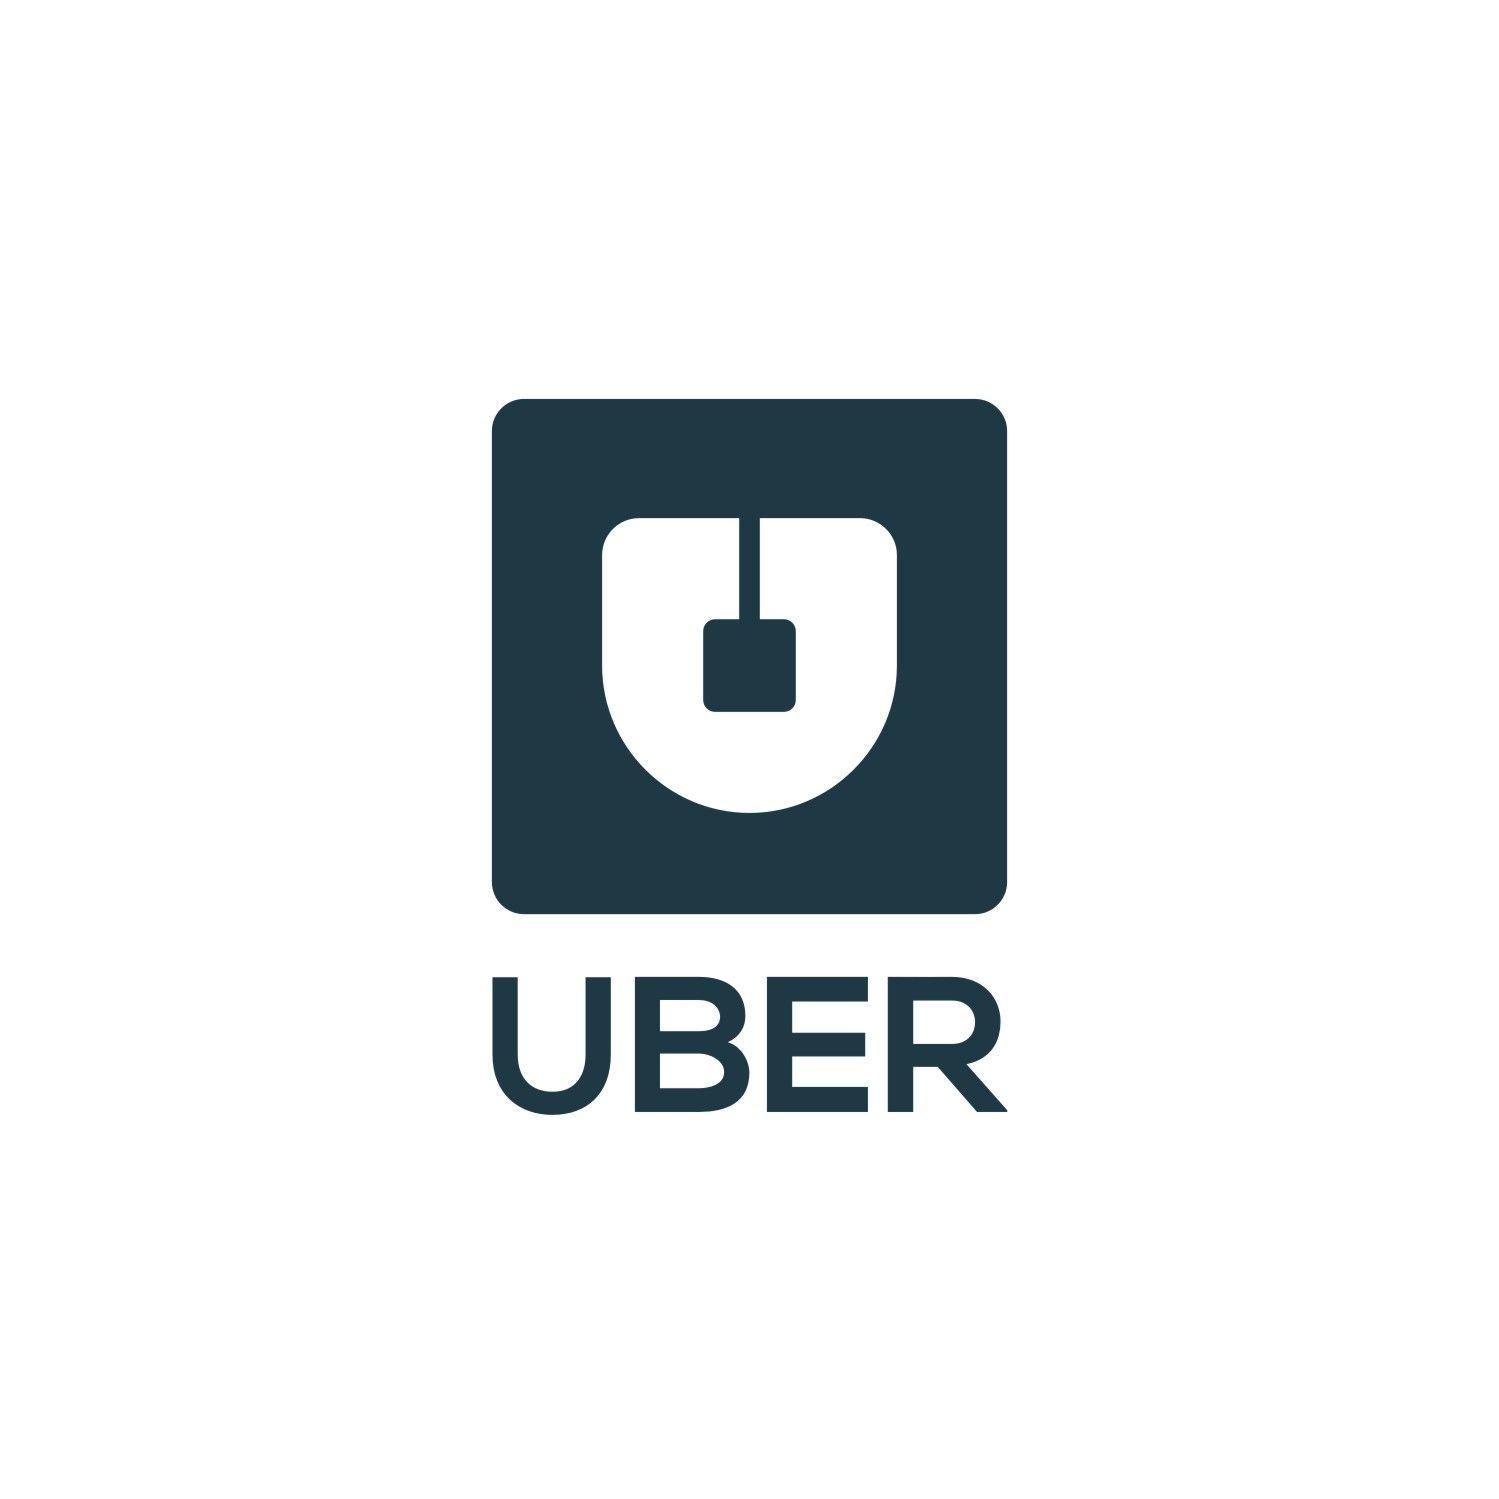 Uber New Logo - Design an unoffical logo for ride share app Uber. $1000 DesignCrowd